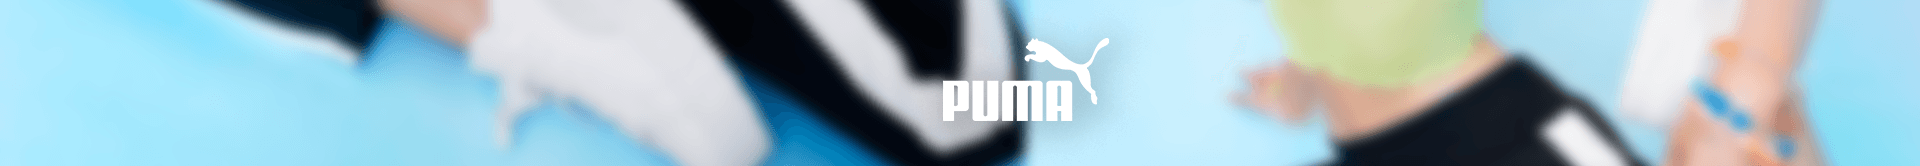 imagem de um tênis desfocado e o logo da Puma 